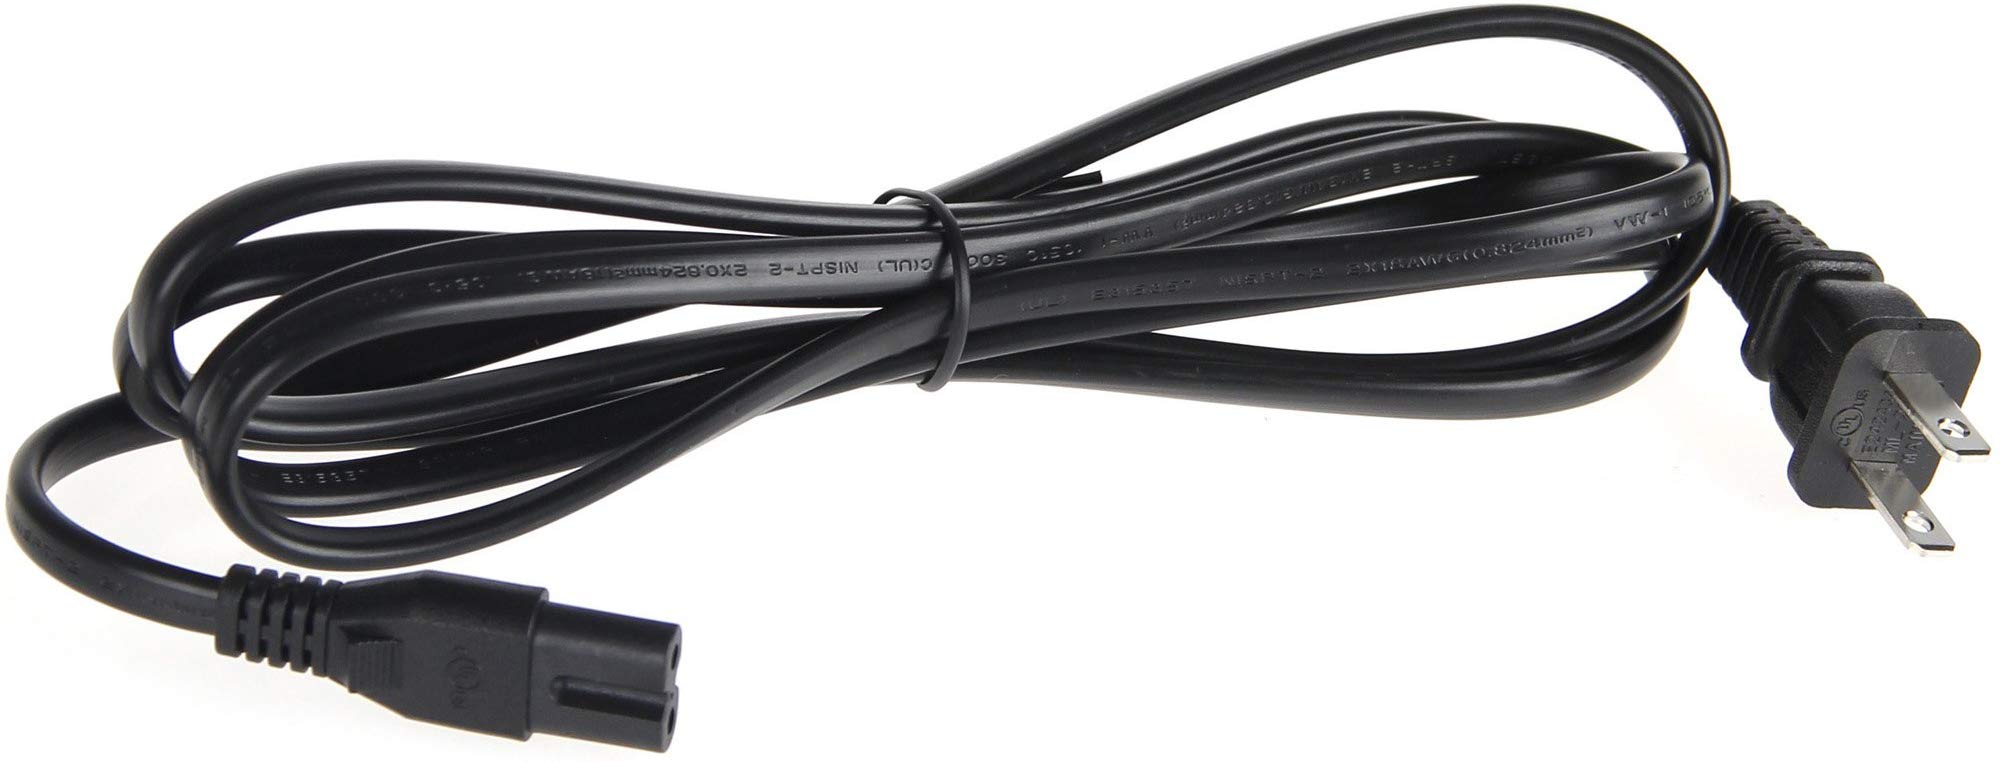 Типы сетевых кабелей: выбор правильной структурированной кабельной инфраструктуры